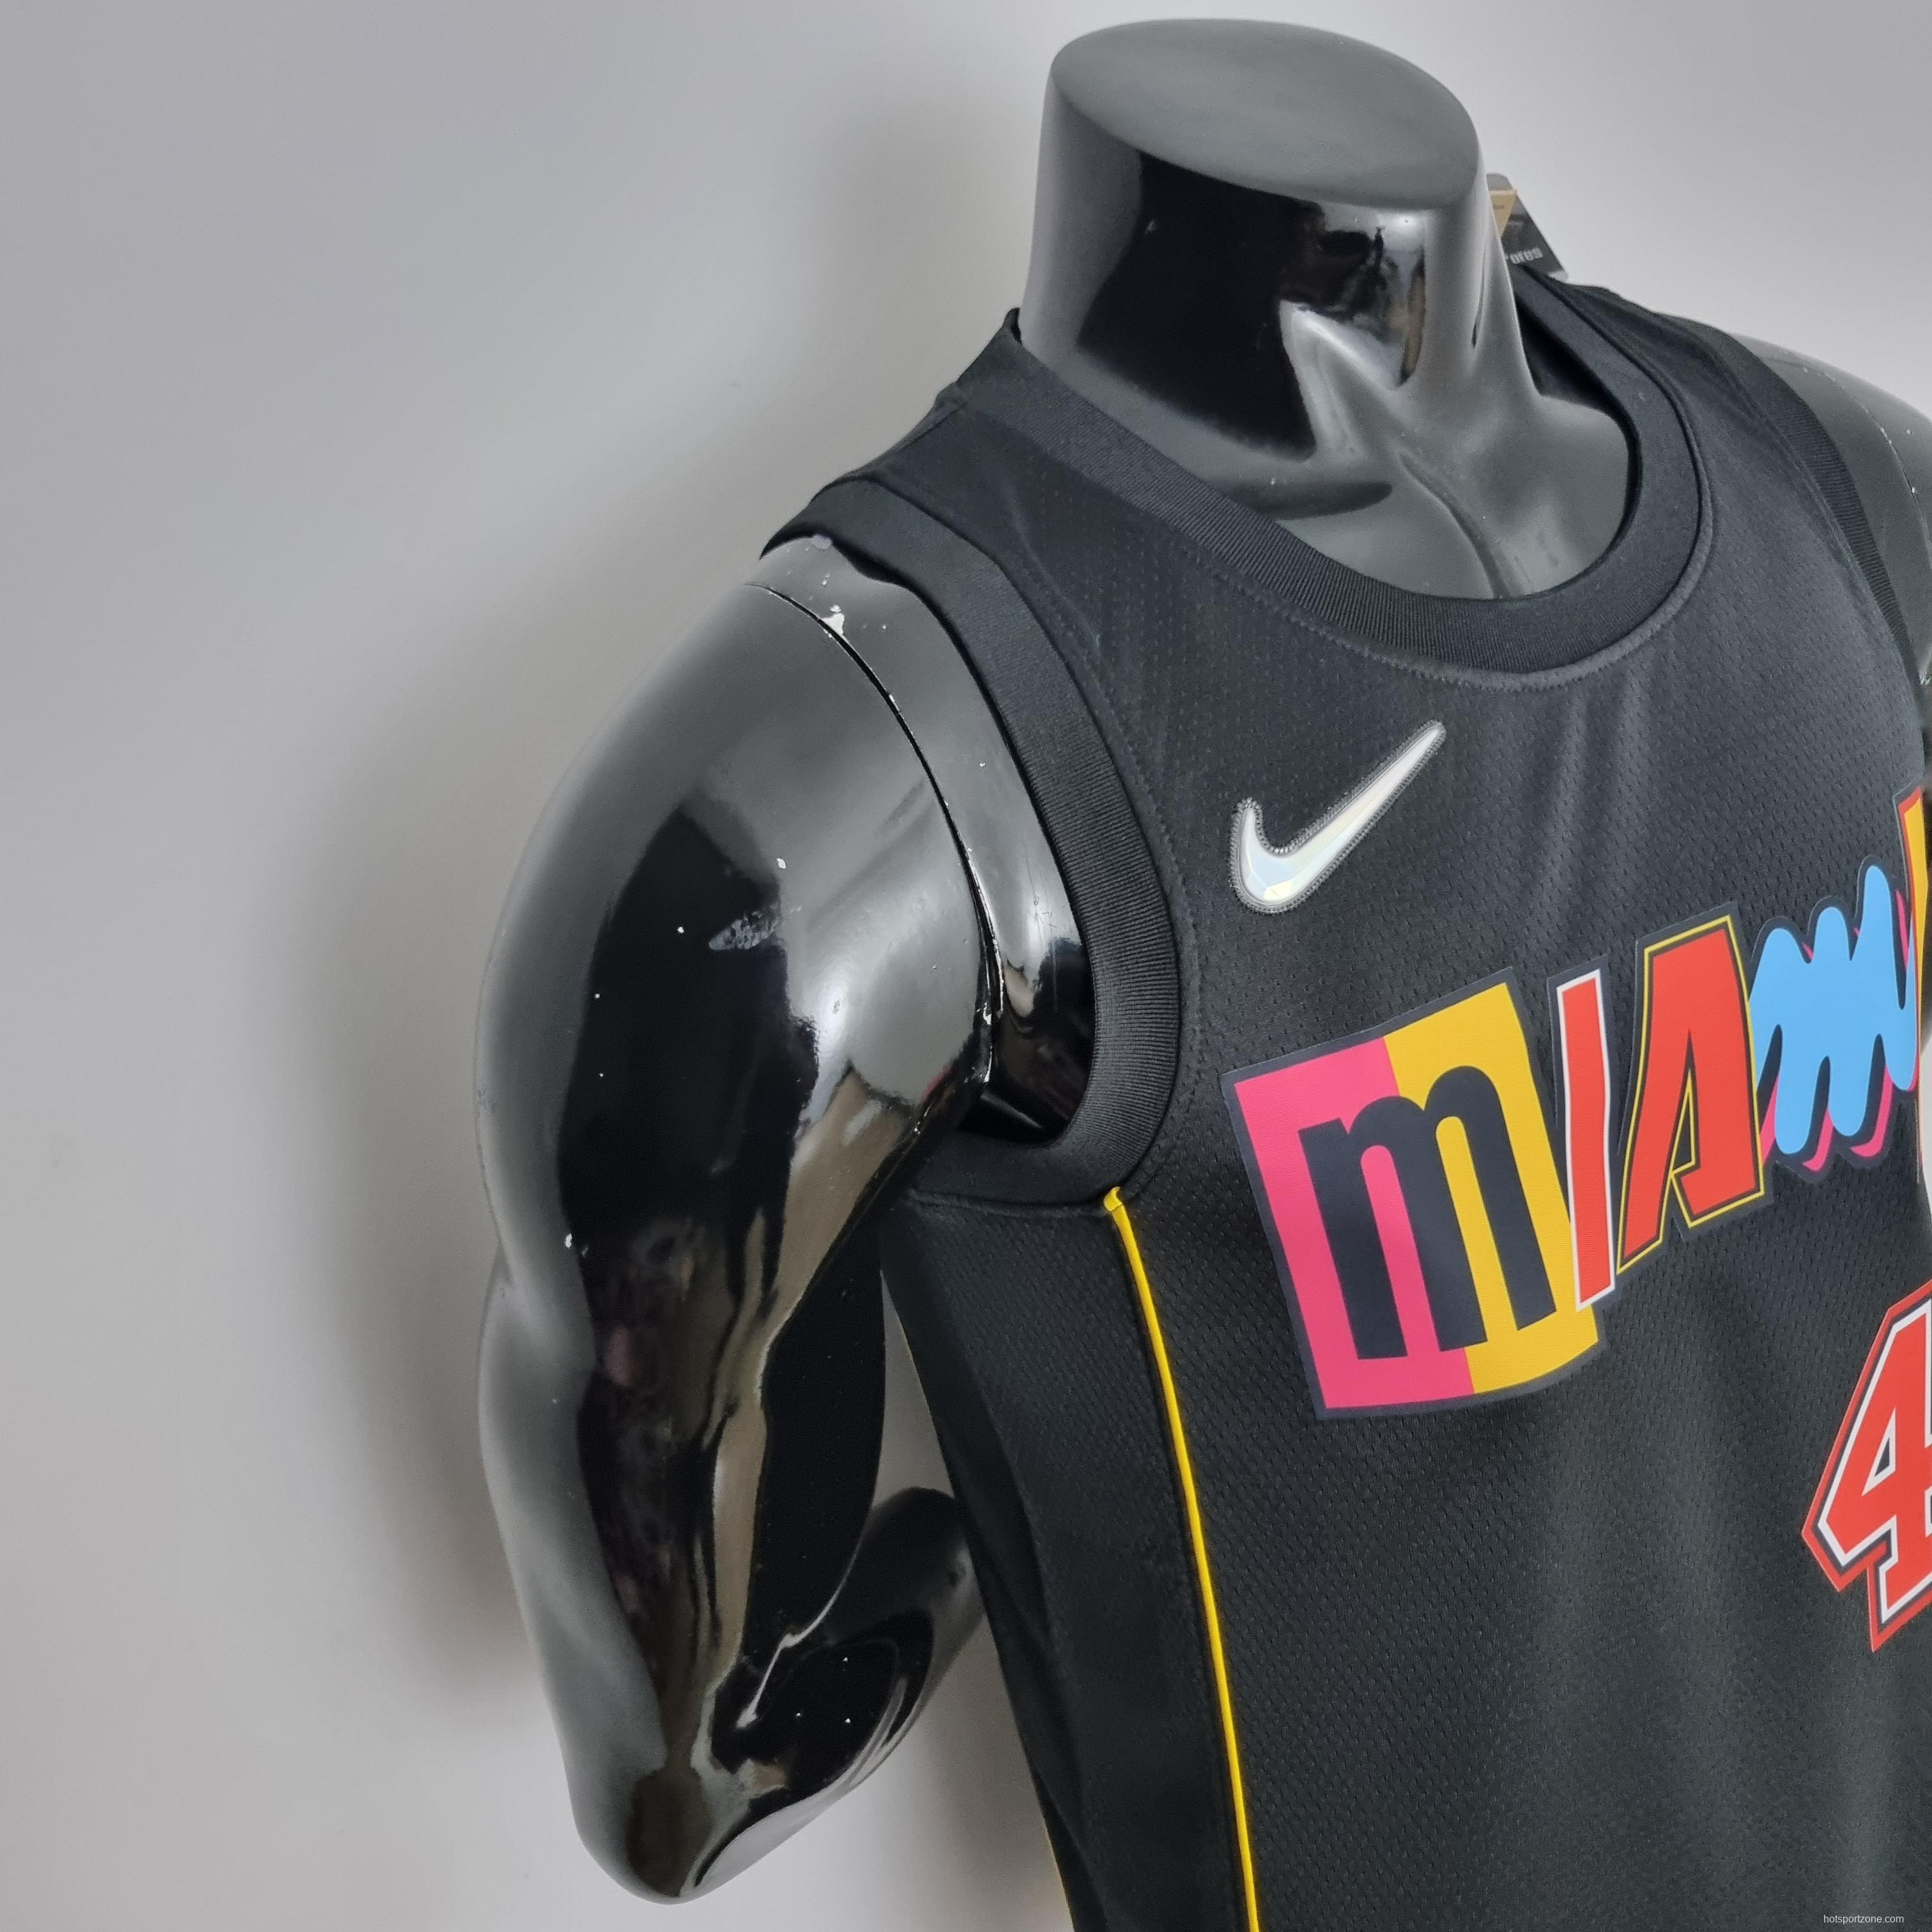 2022 Oladipo #4 Miami Heat City Edition NBA Jersey